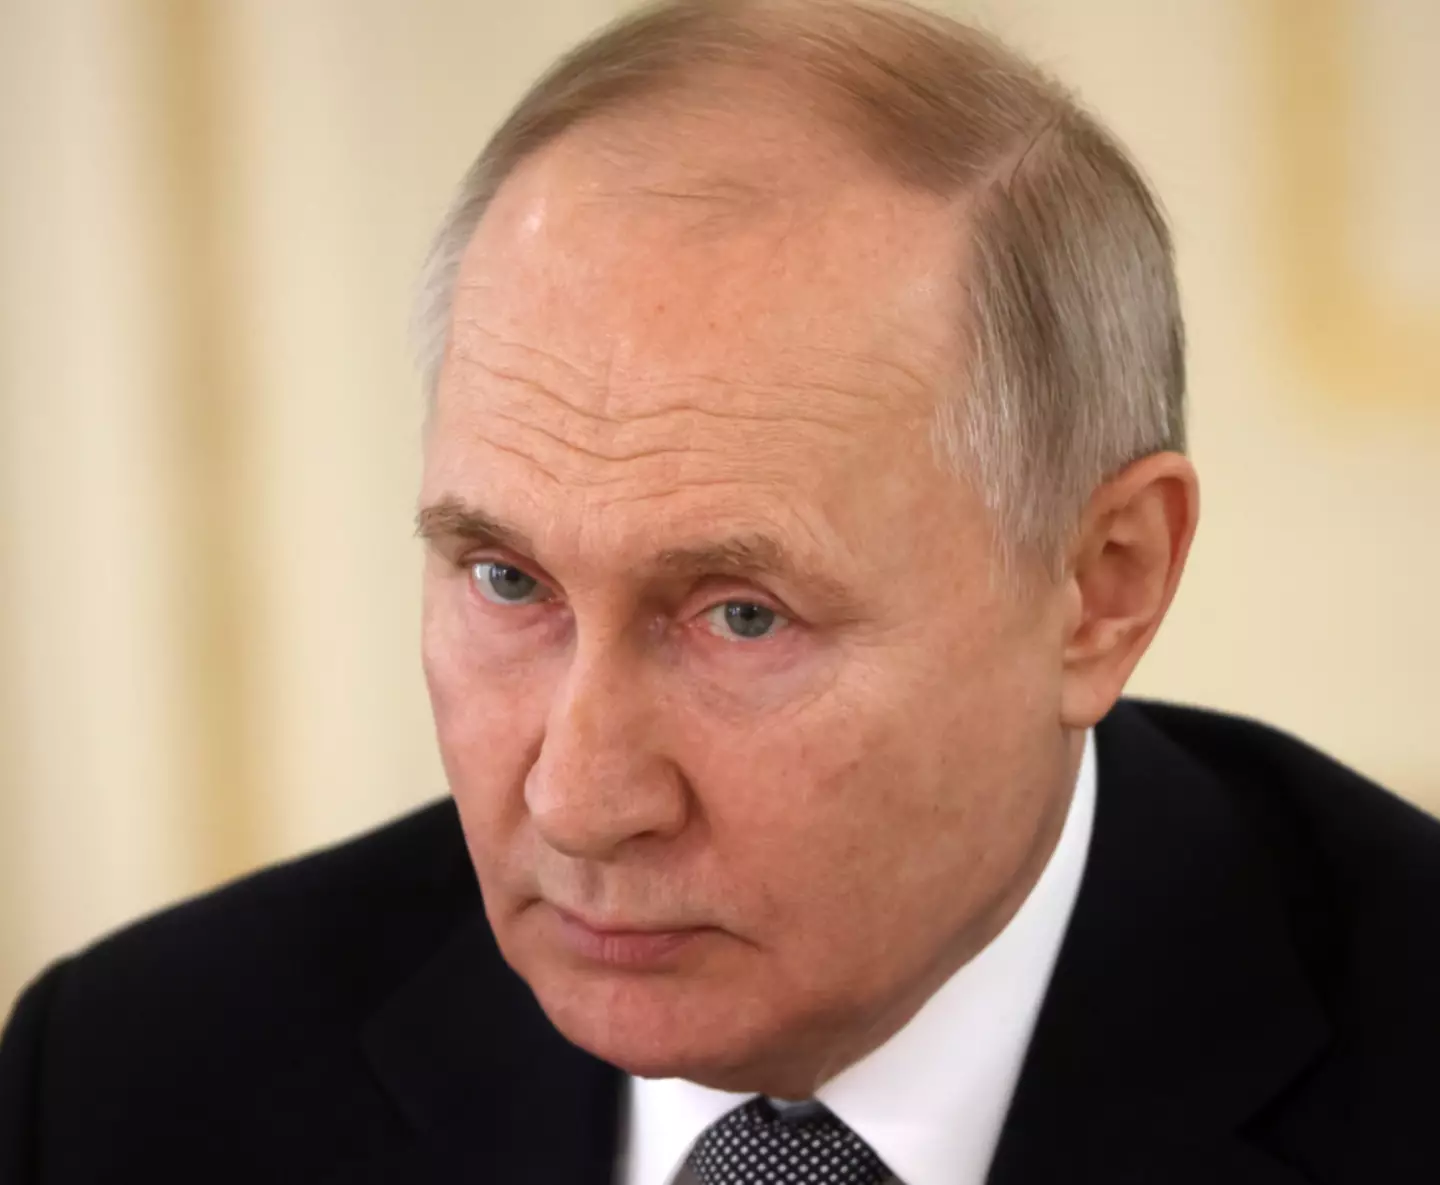 Vladimir Putin initiated the conflict between Russia and Ukraine.